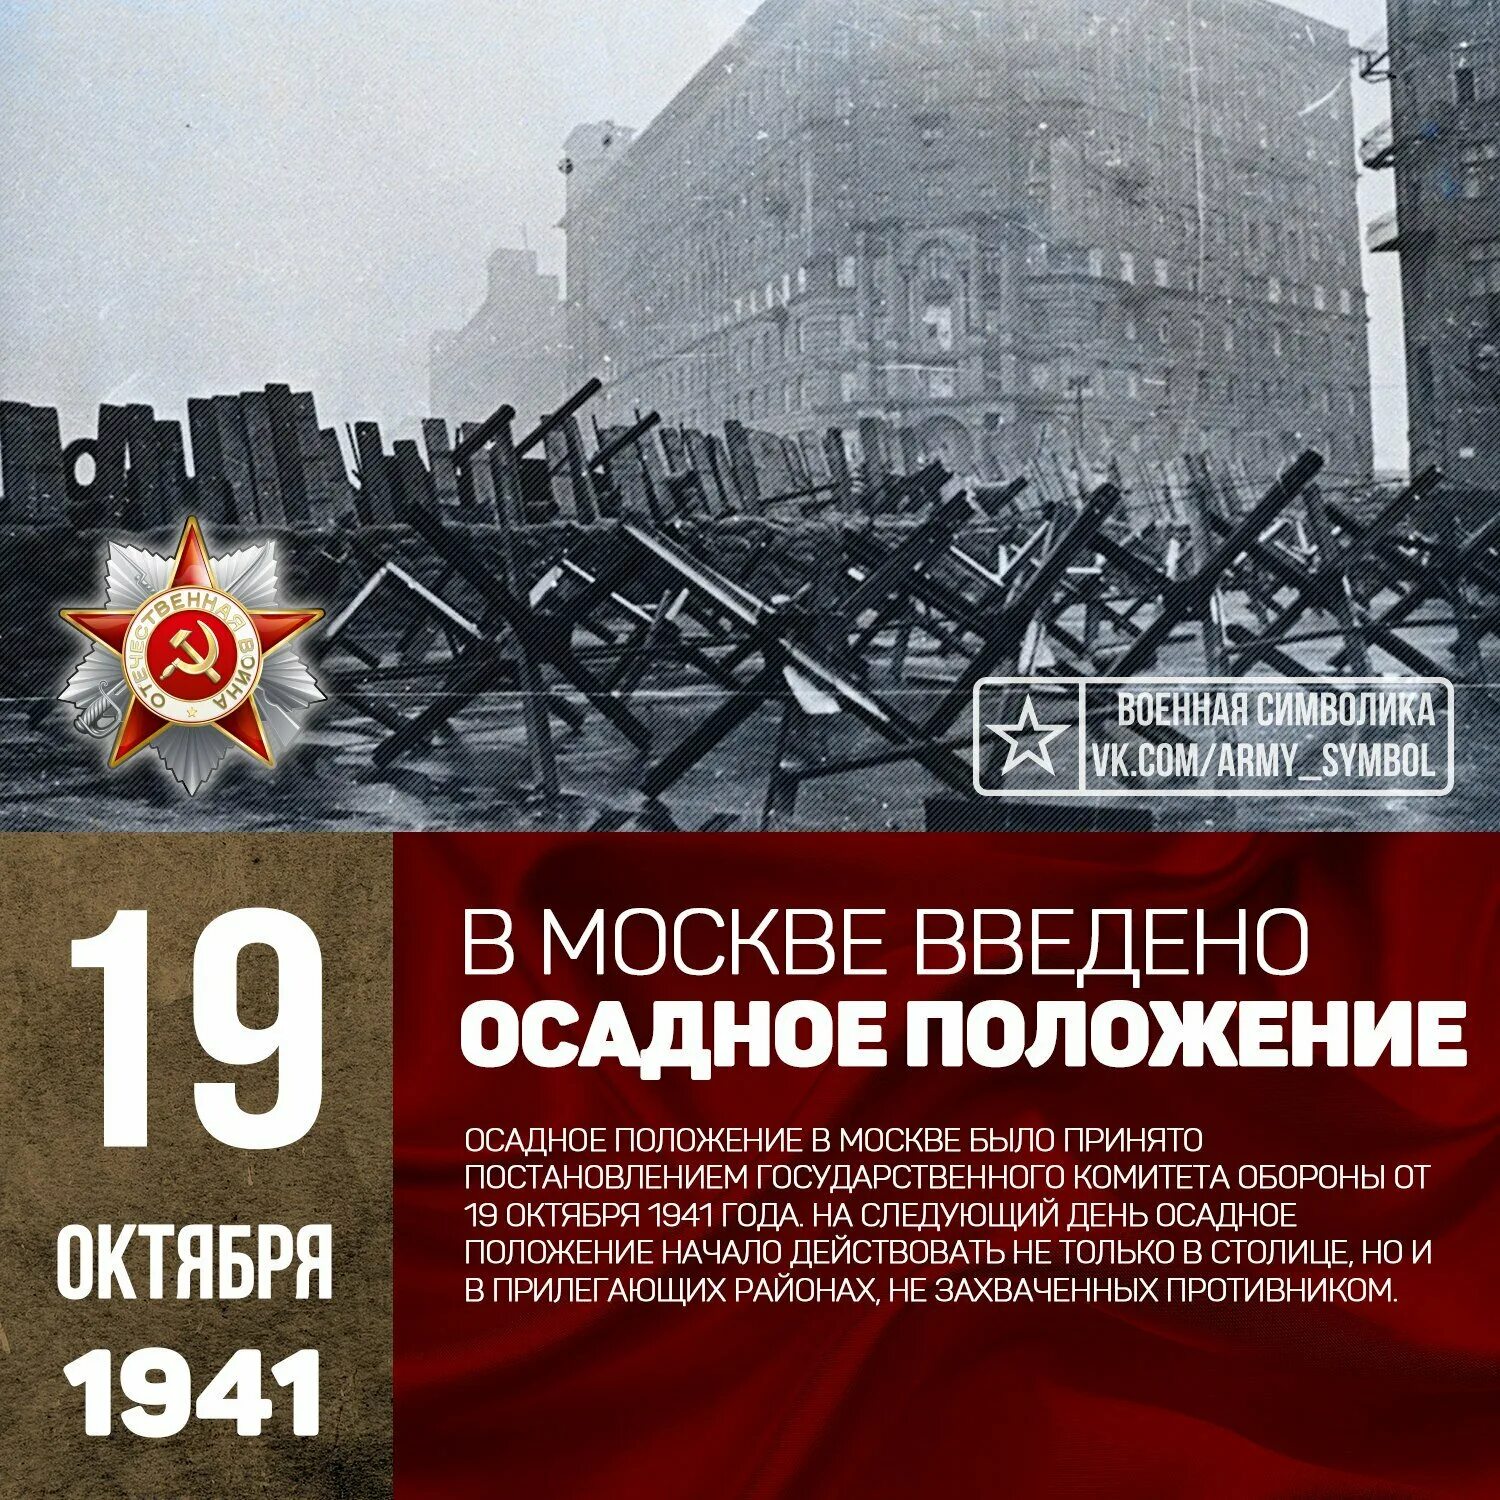 Объявят военное время. 19 Октября 1941 года в Москве объявлено осадное положение. Москва на осадном положении 1941. Москва 19 октября 1941.